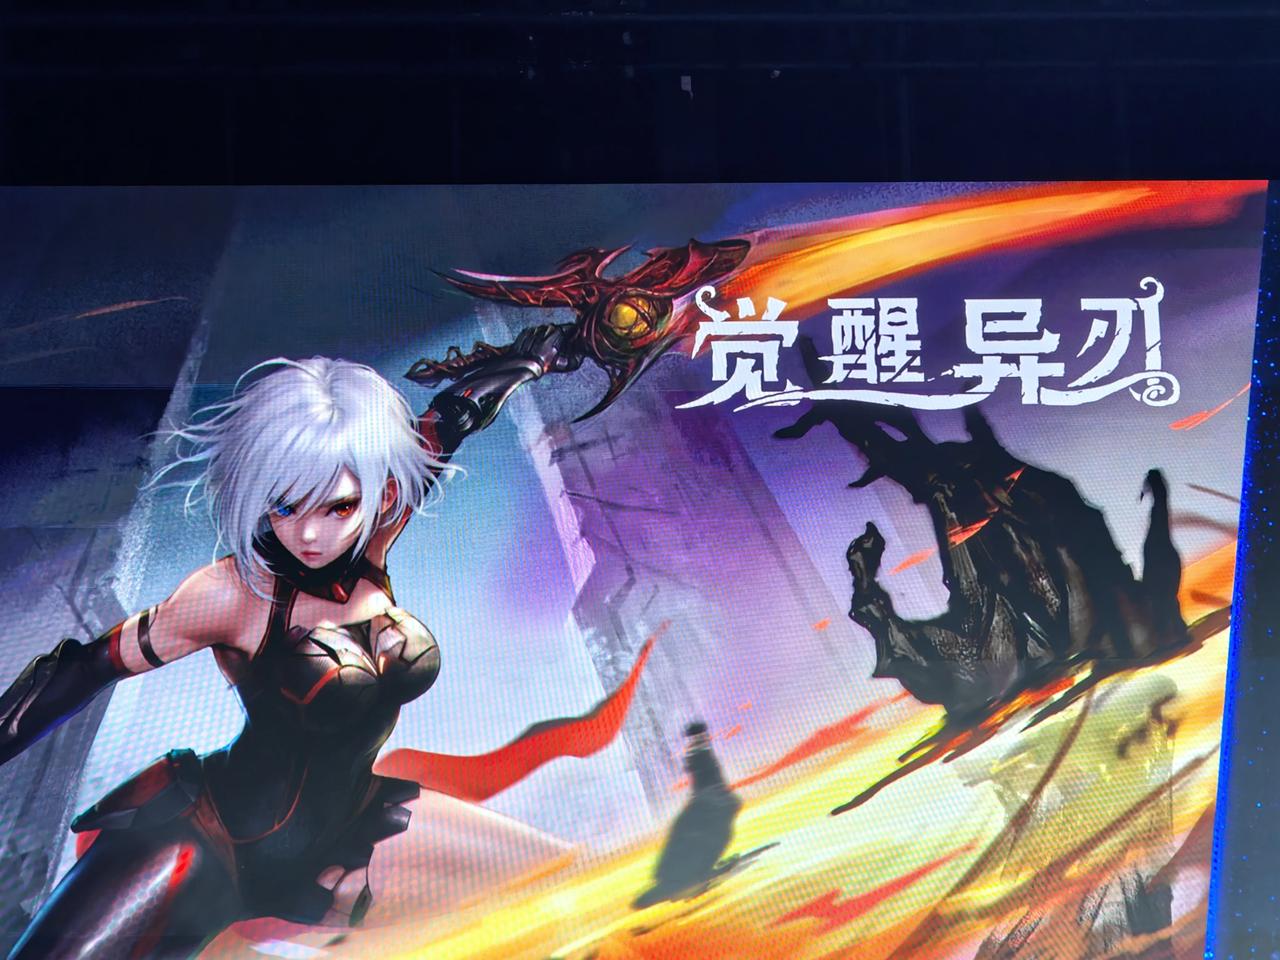 SonyExpo2023上公布了
索尼中国之星第三期三款游戏
看起来好像都还不错